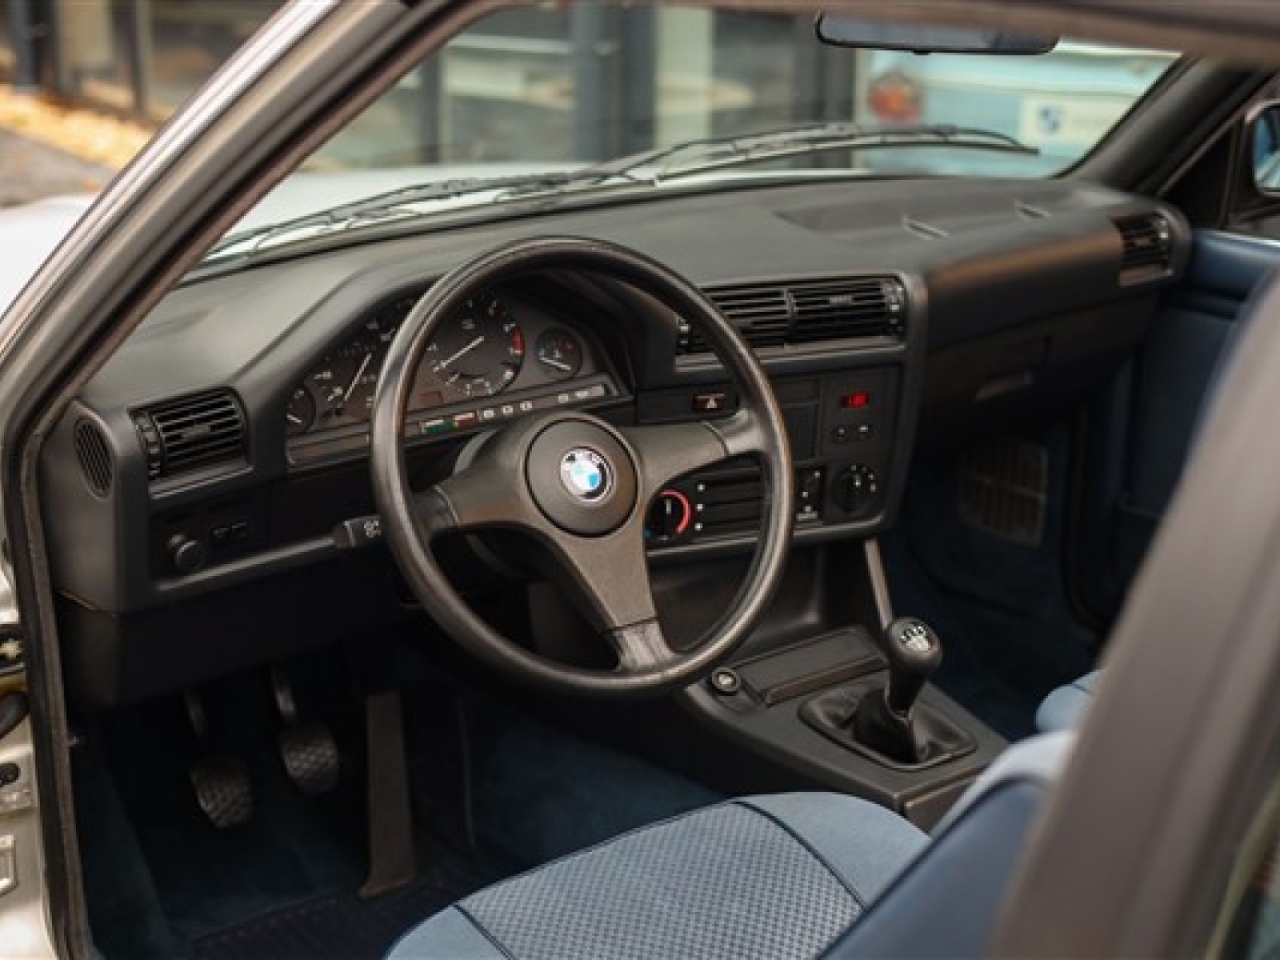 1984 BMW 323i Cabriolet